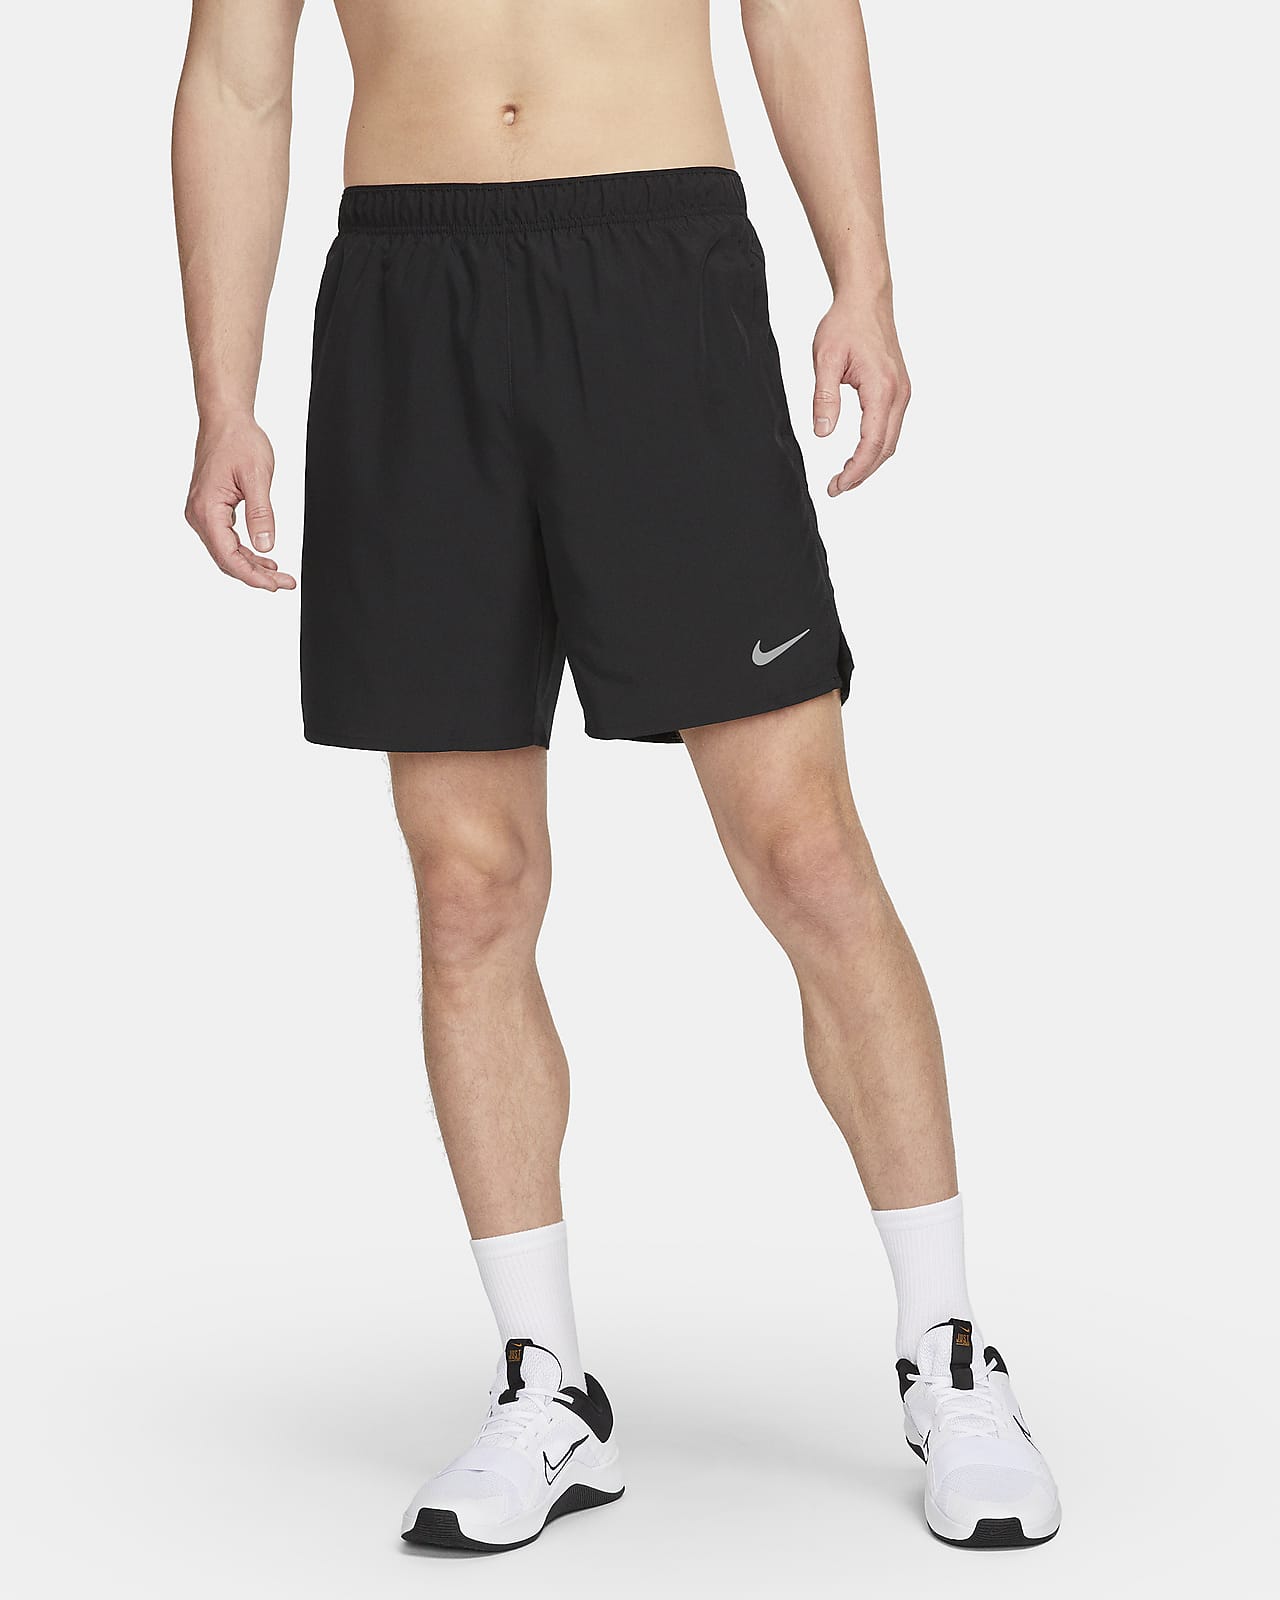 Ανδρικό σορτς για τρέξιμο με επένδυση εσωτερικού σορτς Dri-FIT Nike Challenger 18 cm